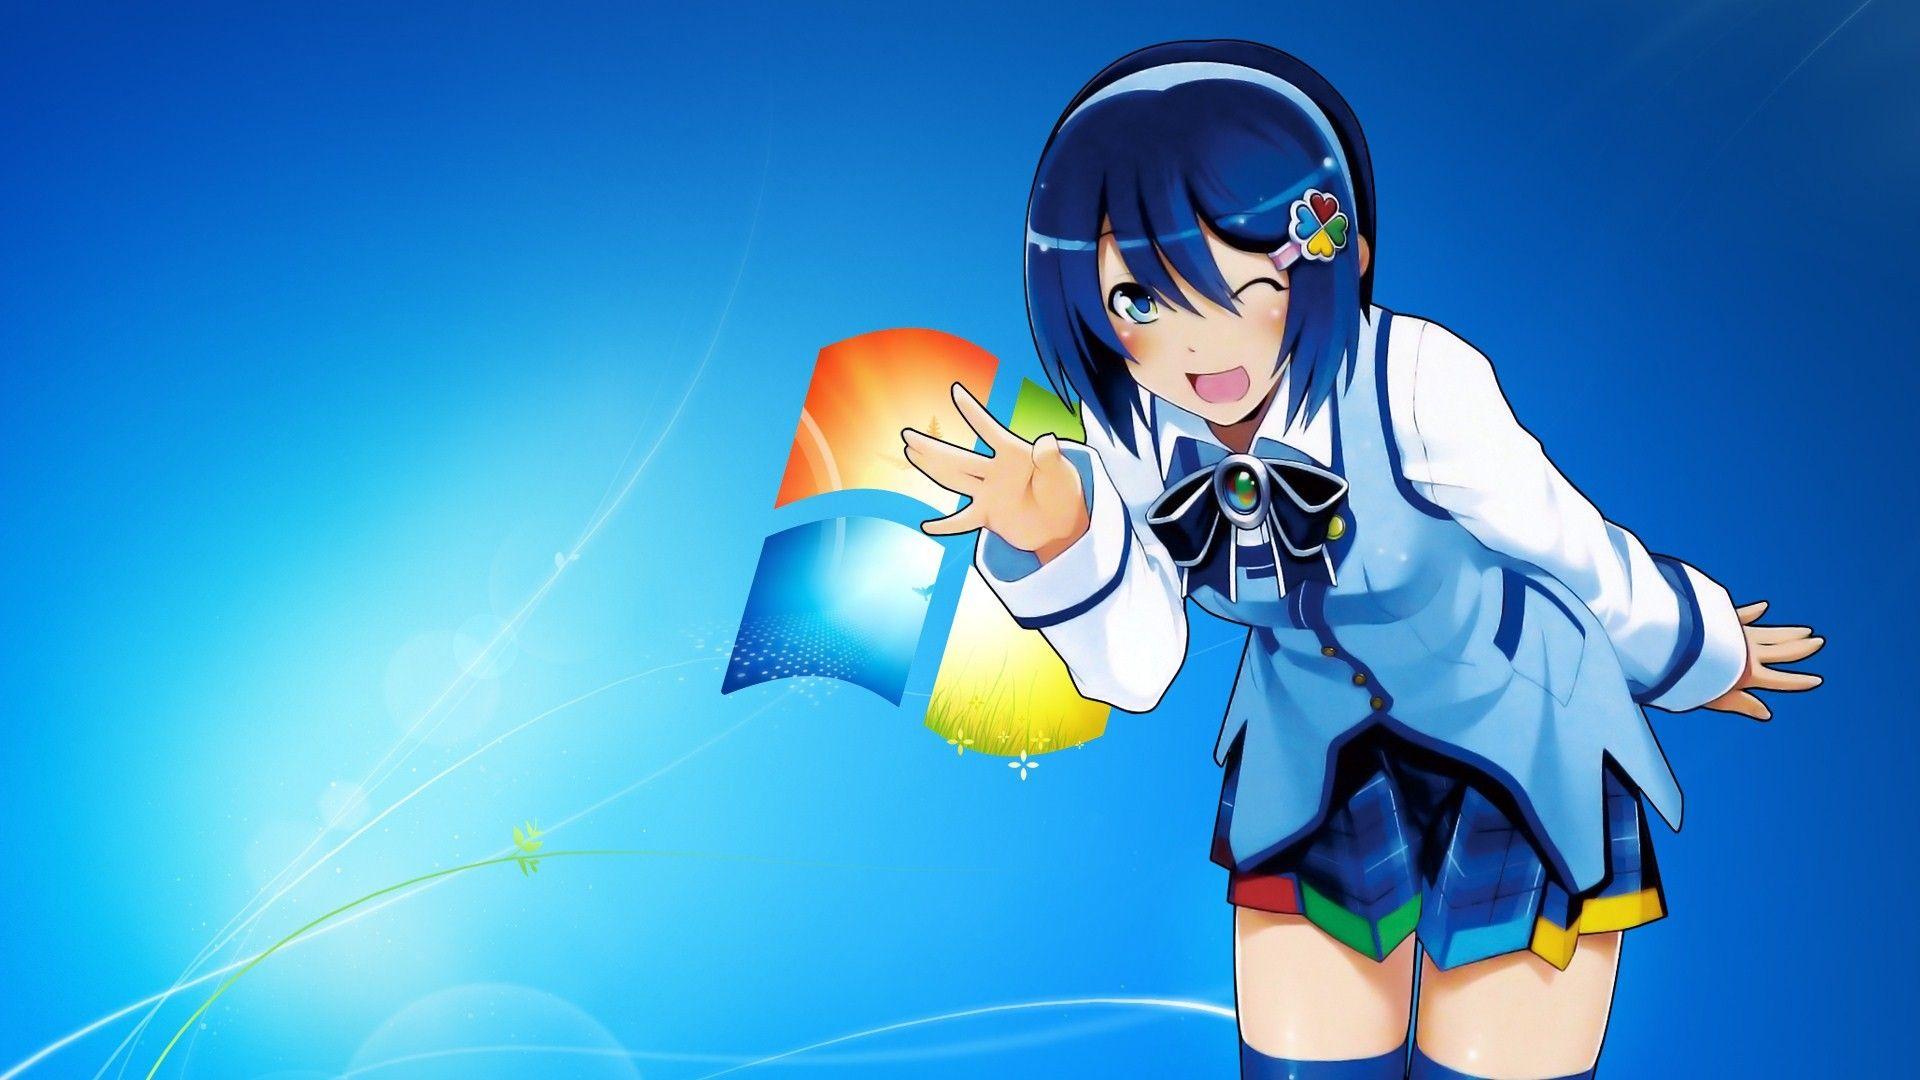 Những bức ảnh nền anime với Windows 7 sẽ đưa bạn đến một ngày mới tràn đầy năng lượng. Với Windows 7 anime wallpapers, bạn sẽ có một trải nghiệm đặc biệt hơn khi sử dụng máy tính. Không chỉ đẹp mắt, những hình nền này còn rất cực kỳ phù hợp cho các fan anime và manga.